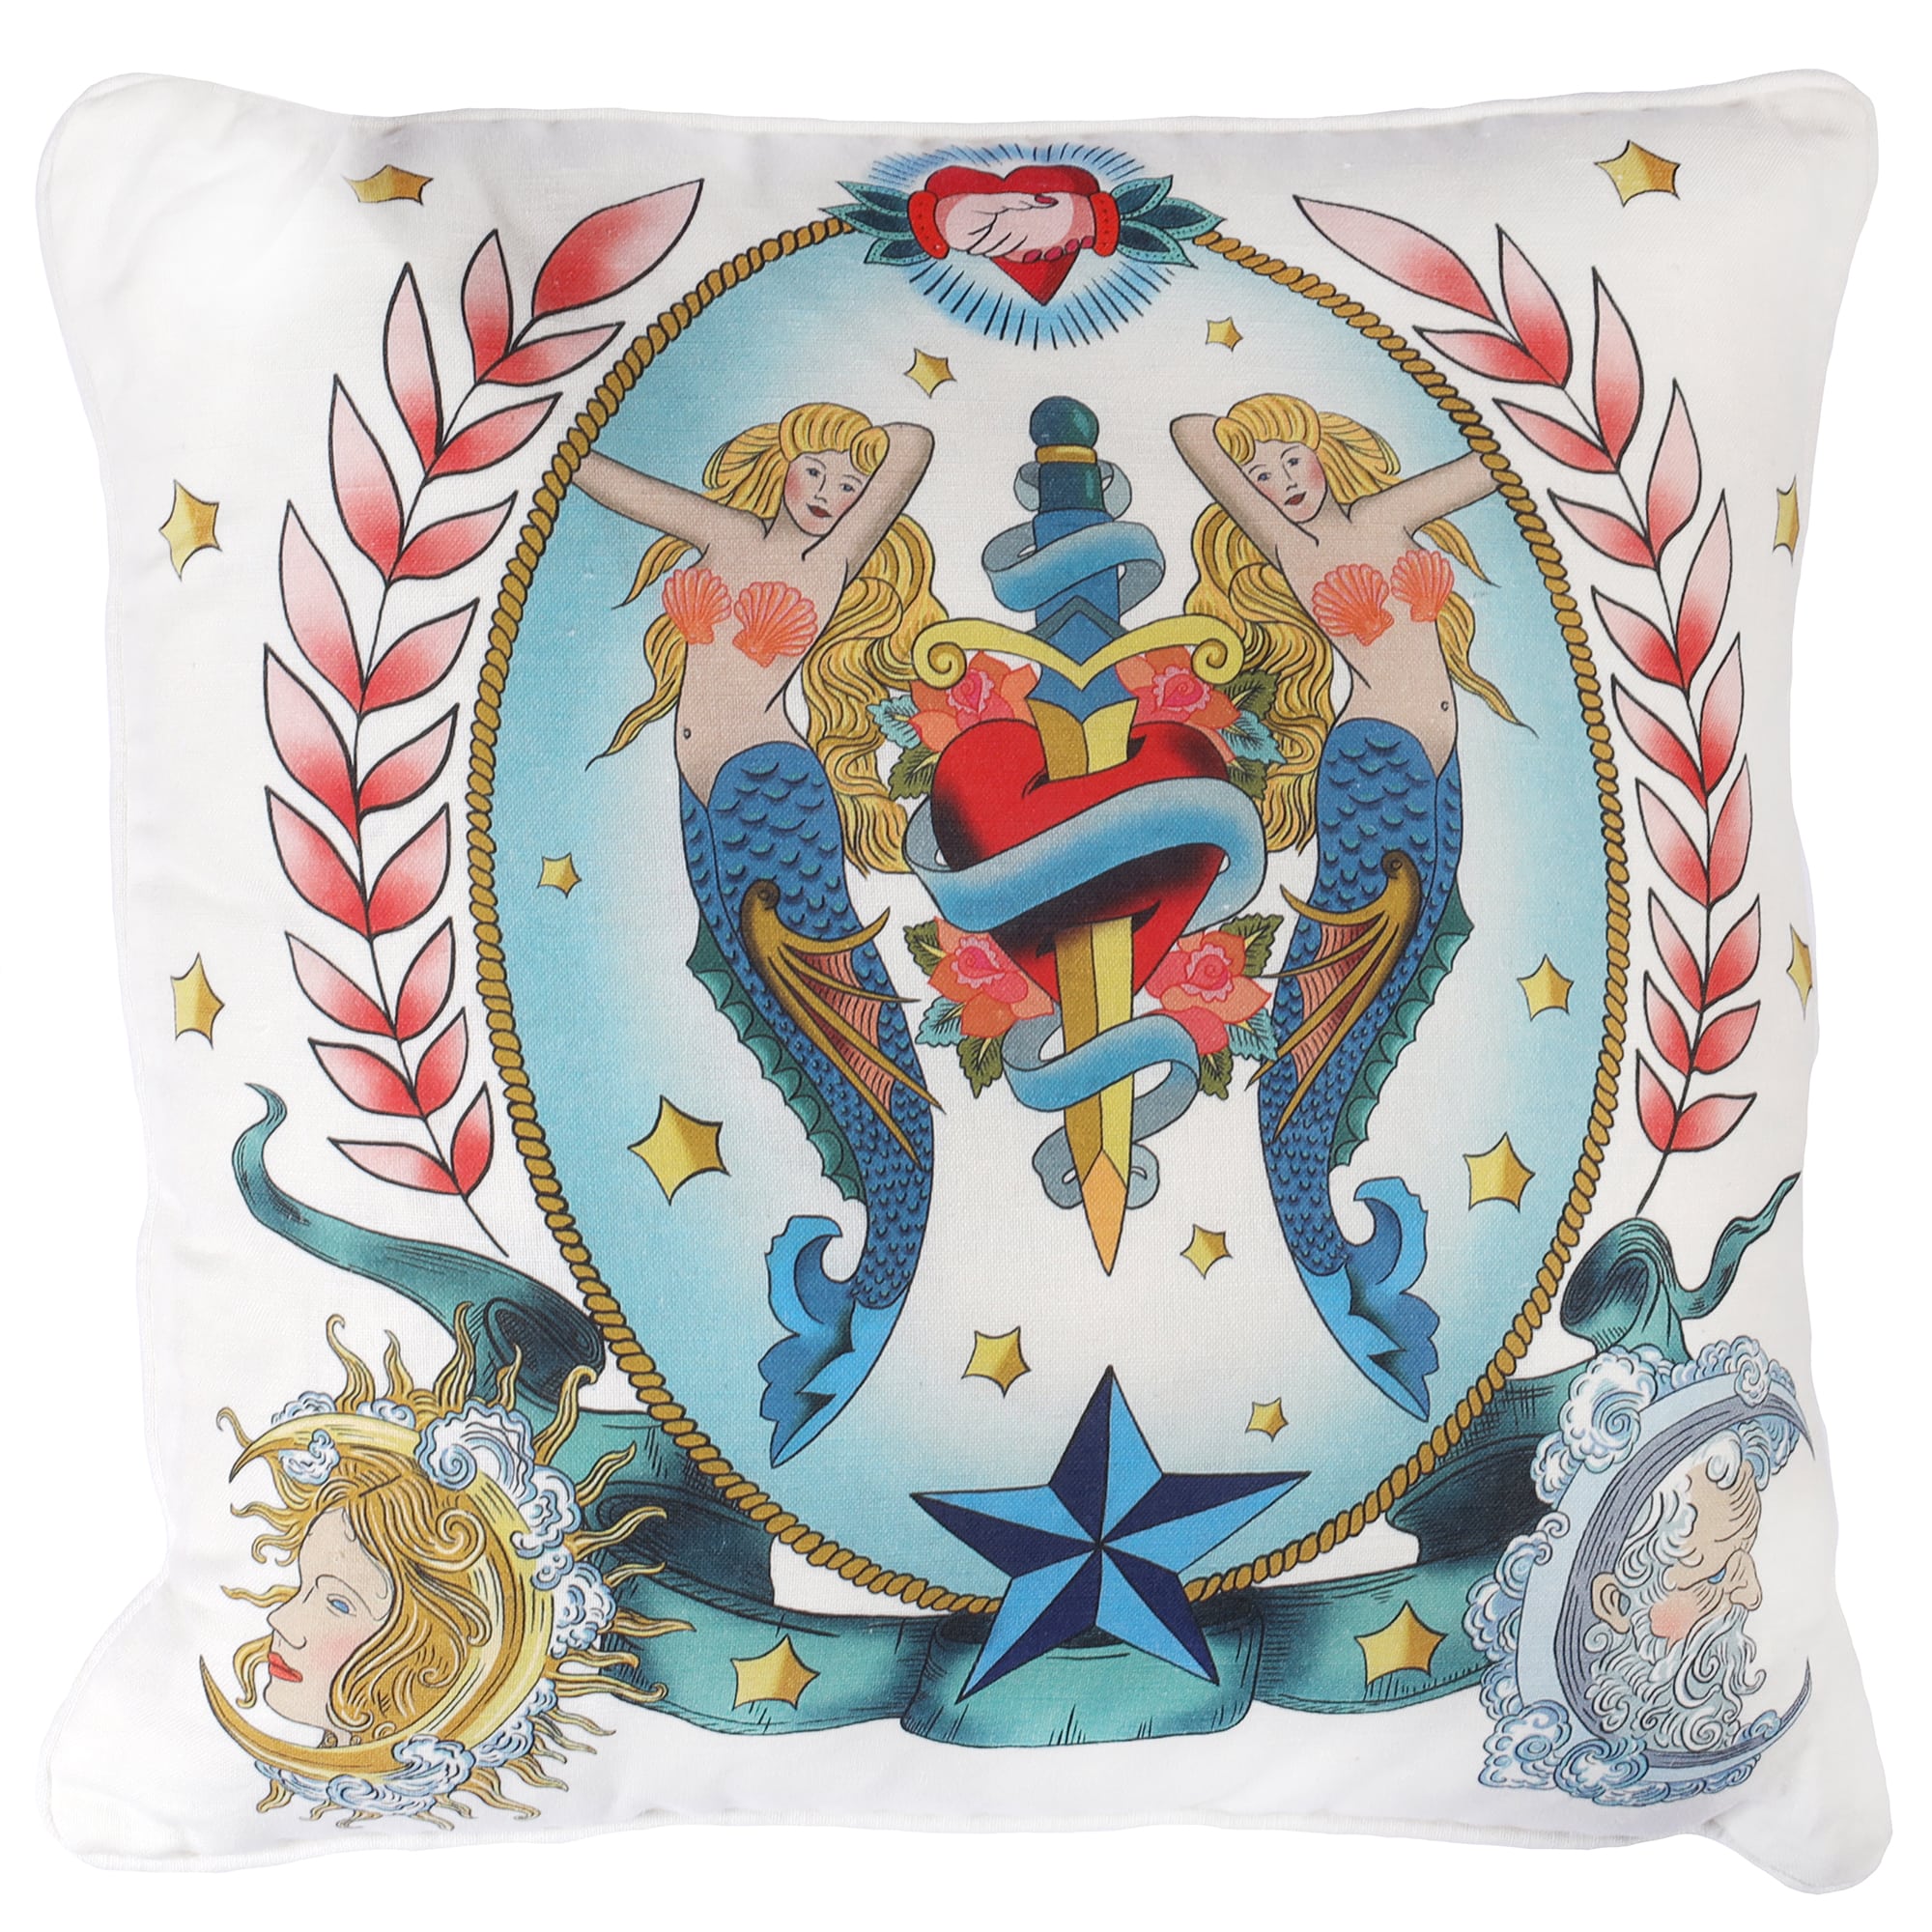 Mermaids & Daggers Cushion Cover